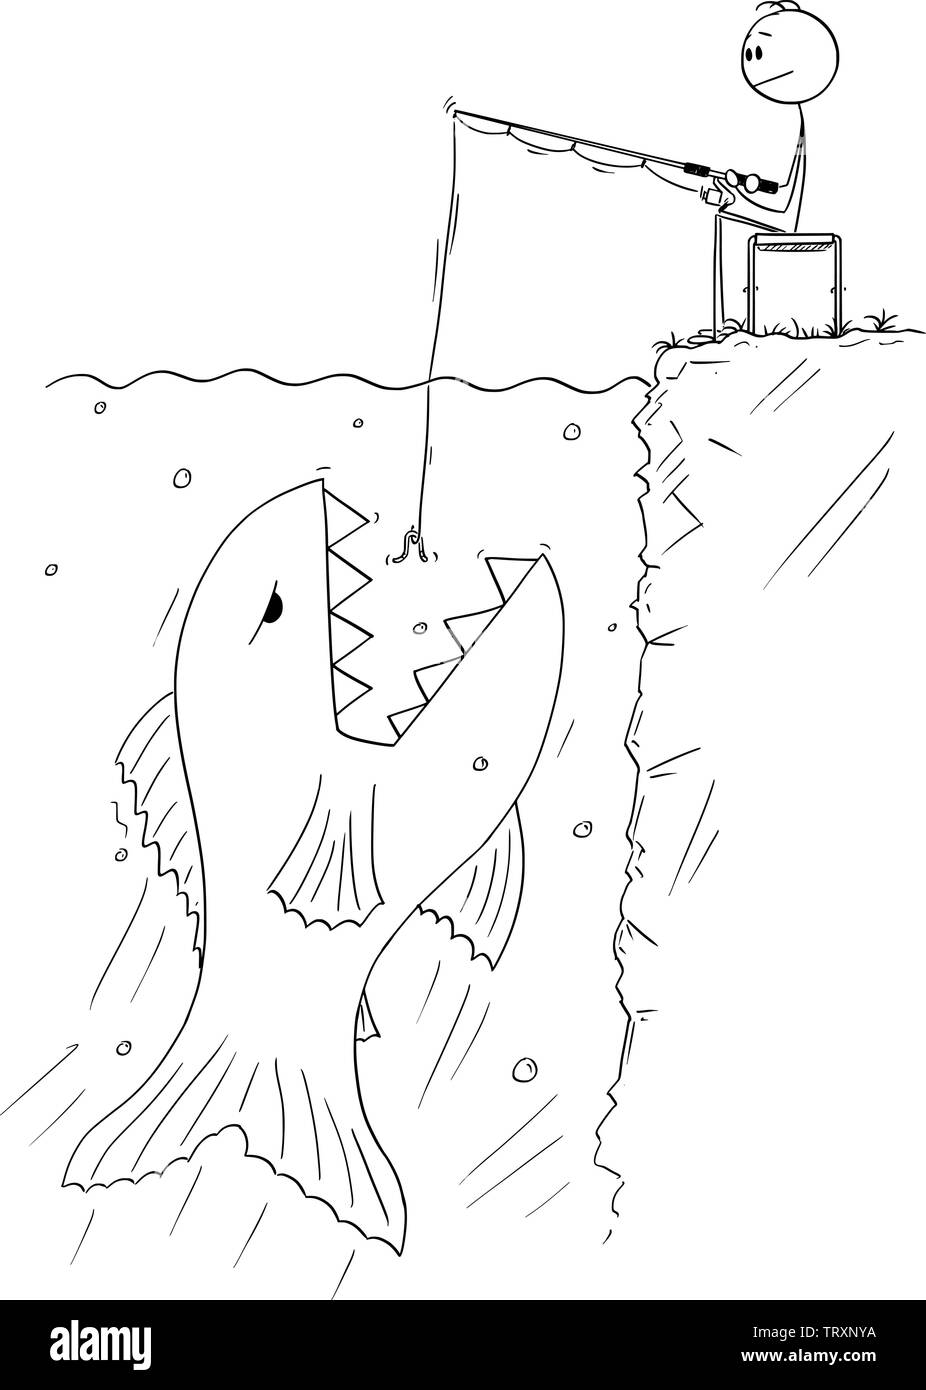 Vector cartoon stick figure dessin illustration conceptuelle de l'homme assis calmement près de l'eau, et la pêche à la ligne ou la pêche tout en poisson géant et dangereux est flottante de manger l'appât. Illustration de Vecteur